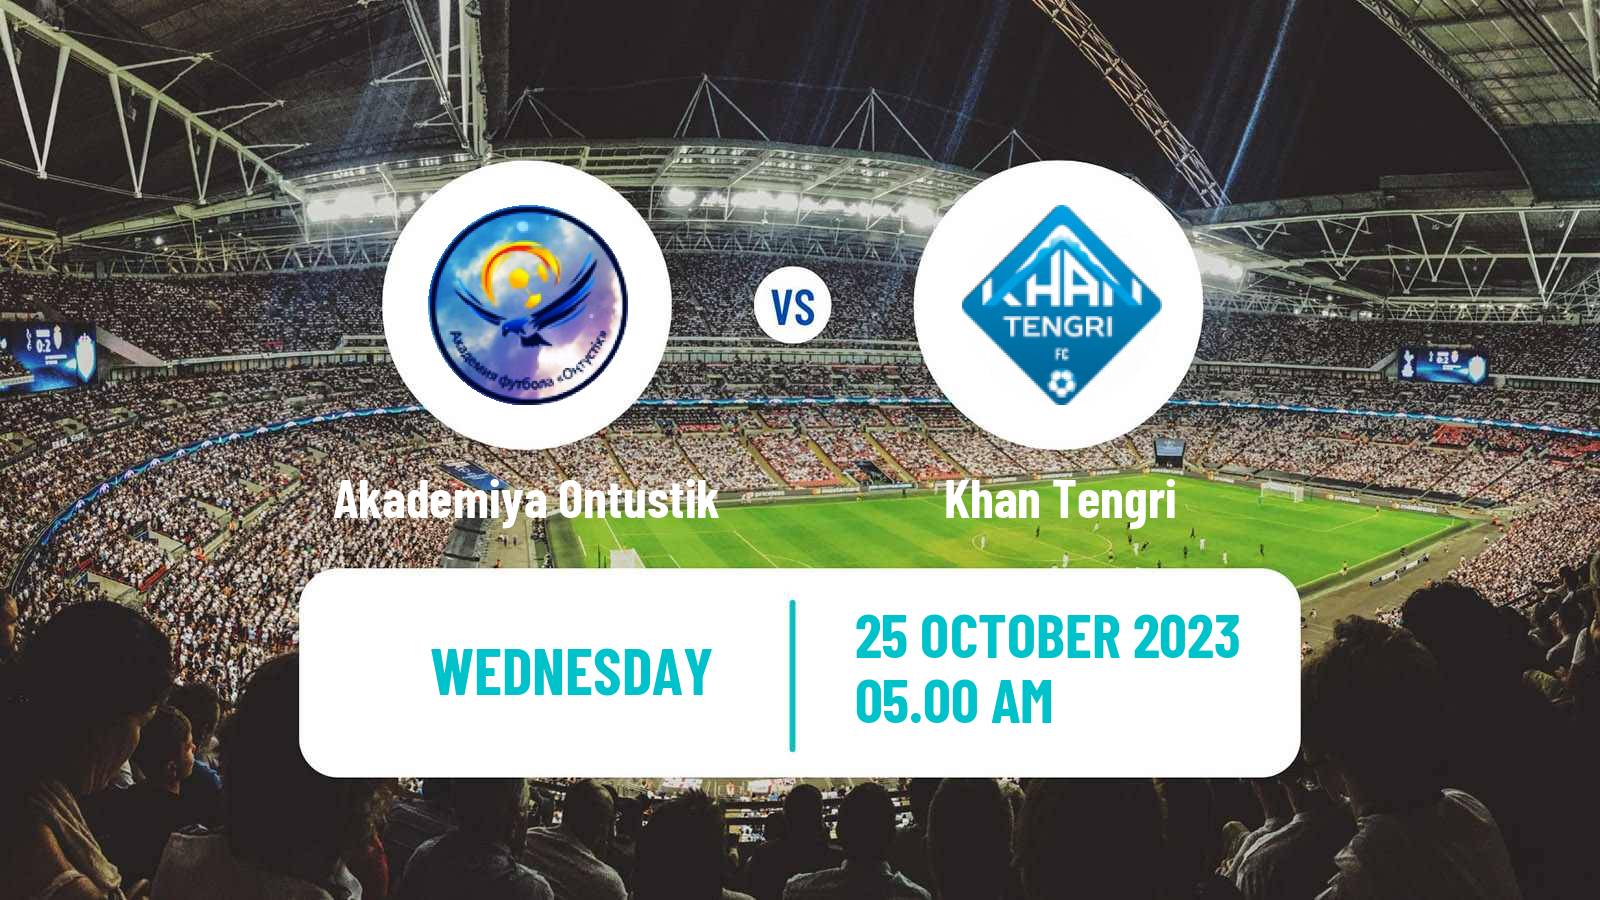 Soccer Kazakh First Division Akademiya Ontustik - Khan Tengri